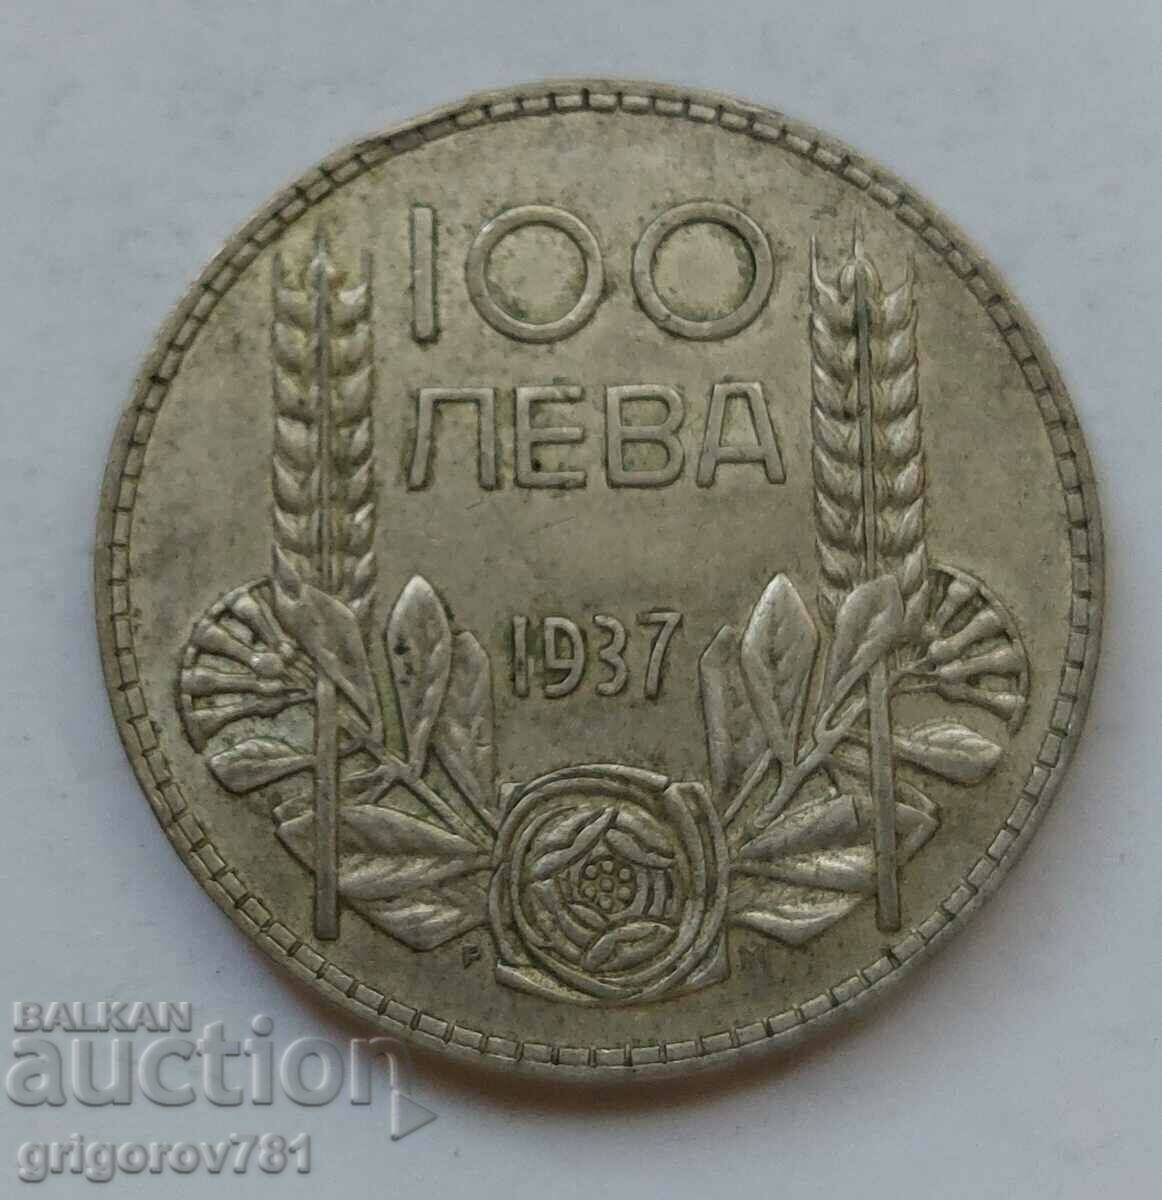 100 leva silver Bulgaria 1937 - silver coin #149